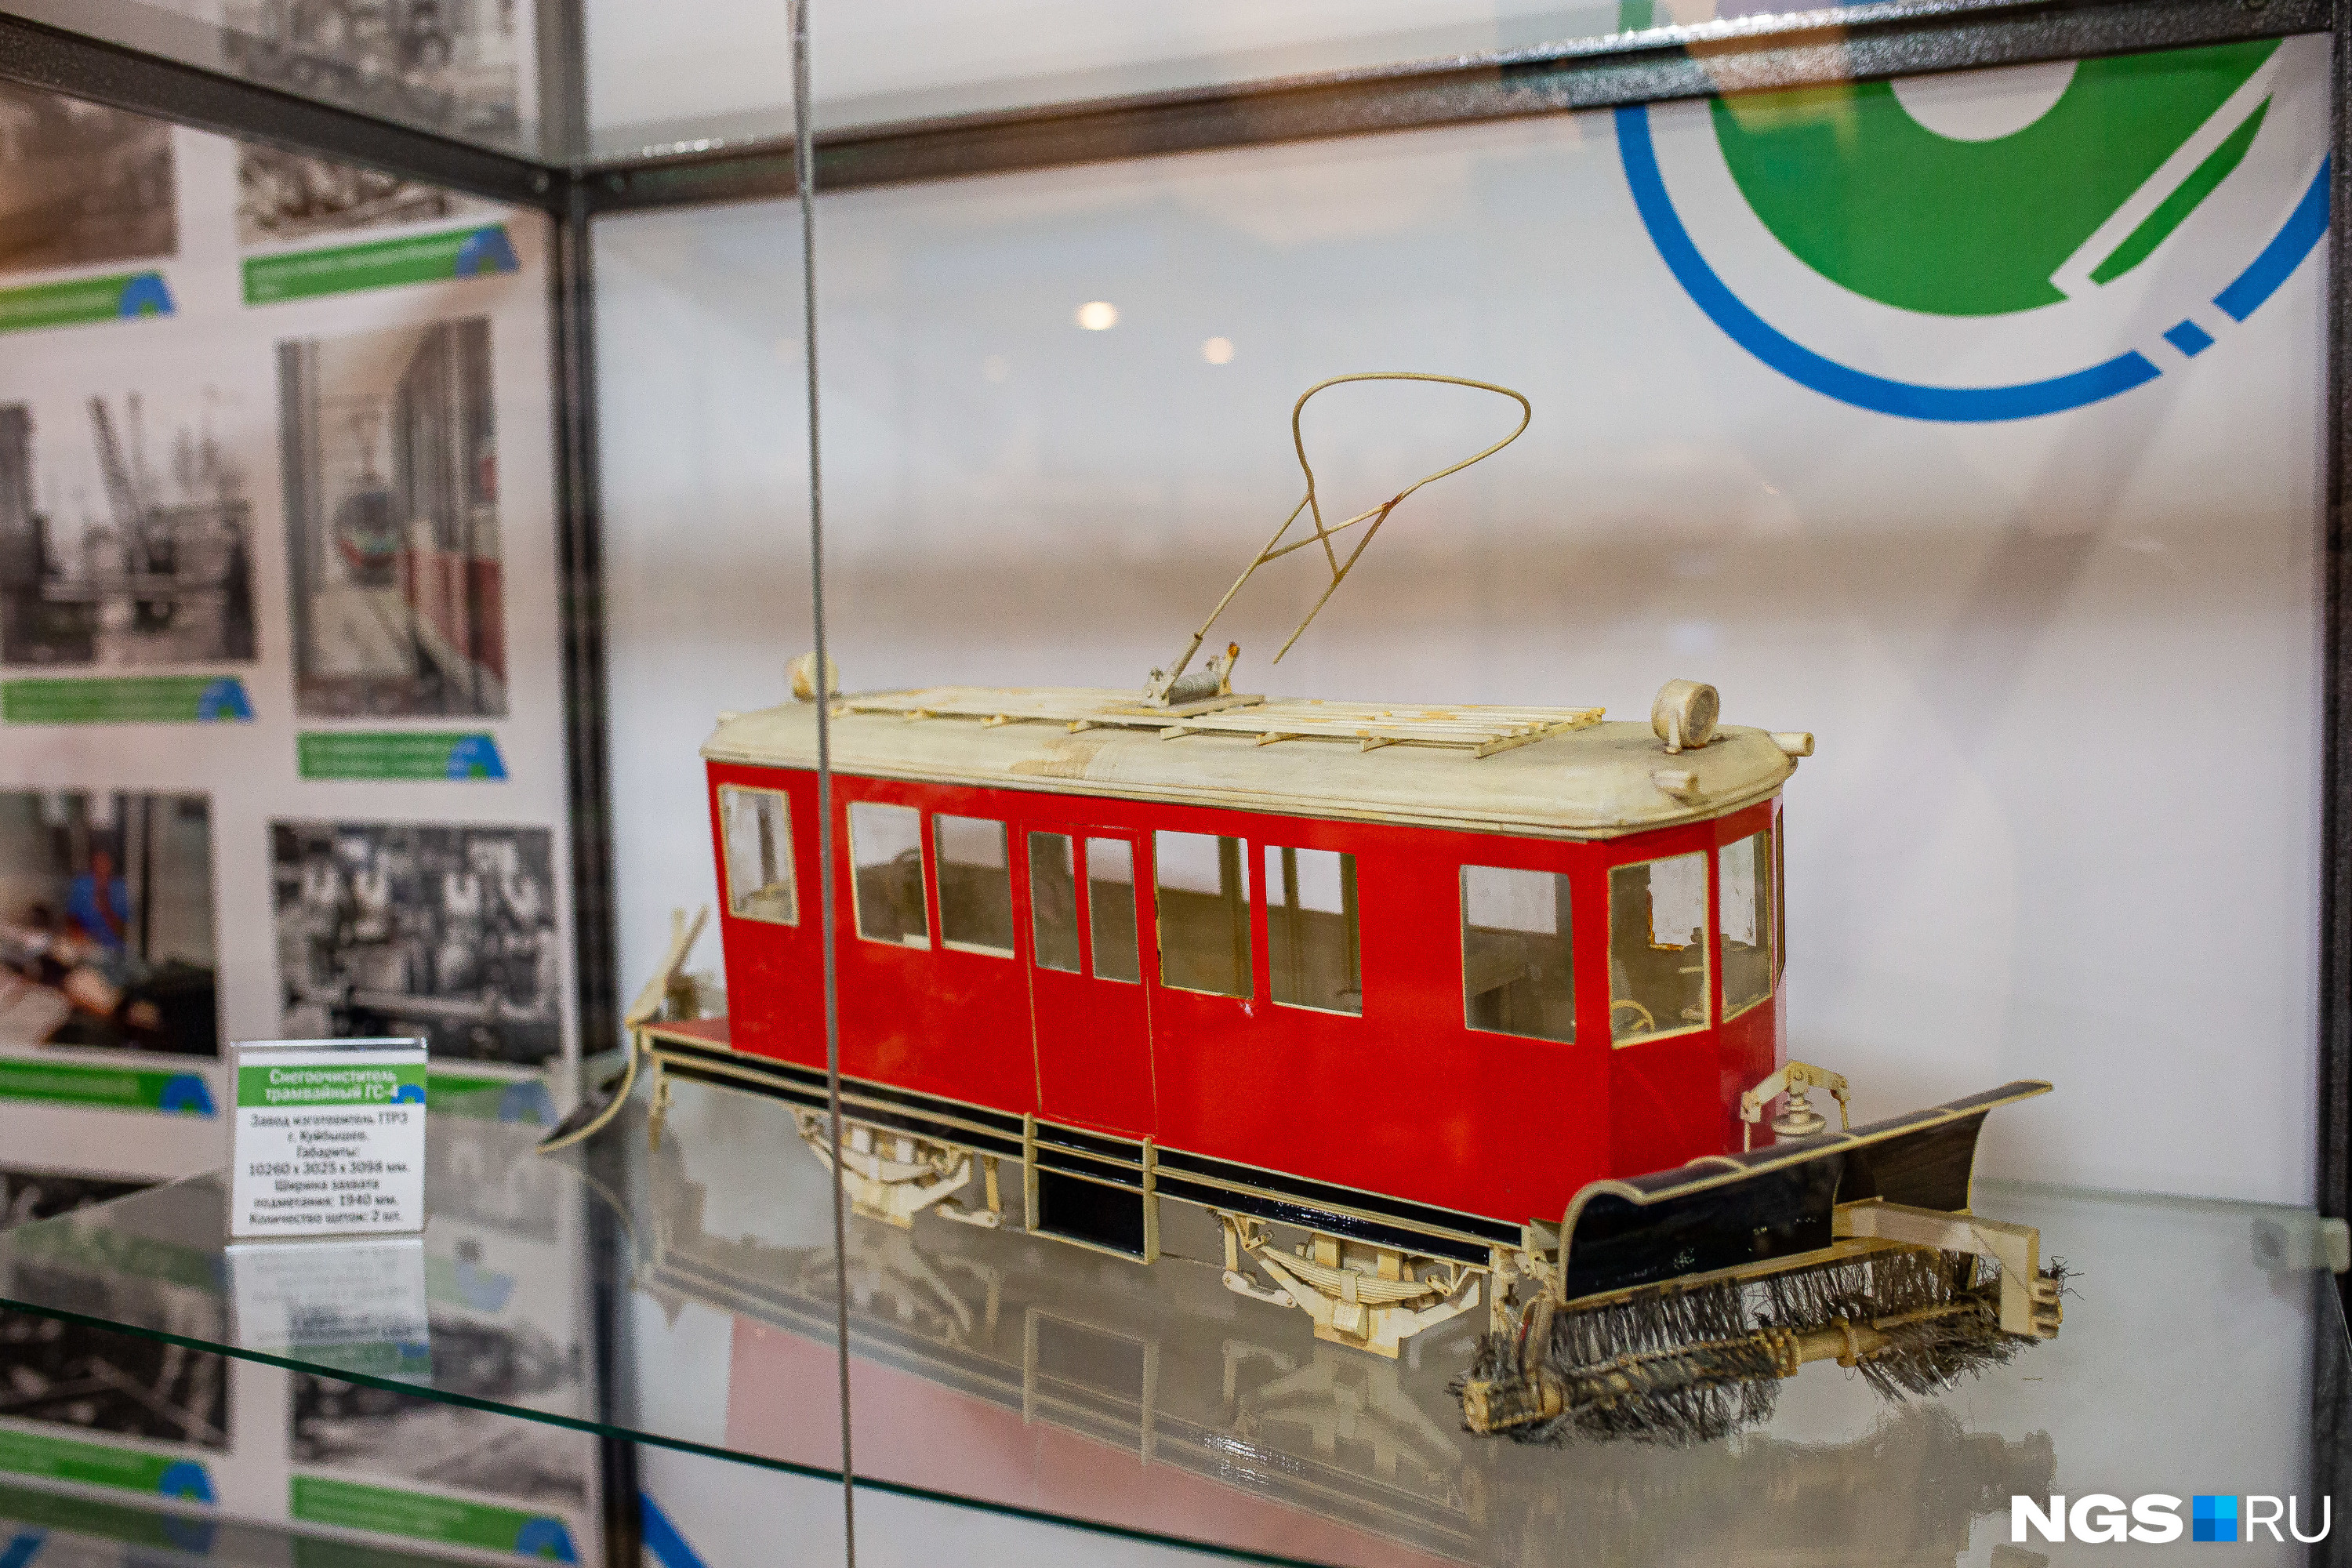 По моделям, представленным в музее, можно узнать историю развития электротранспорта в Новосибирске